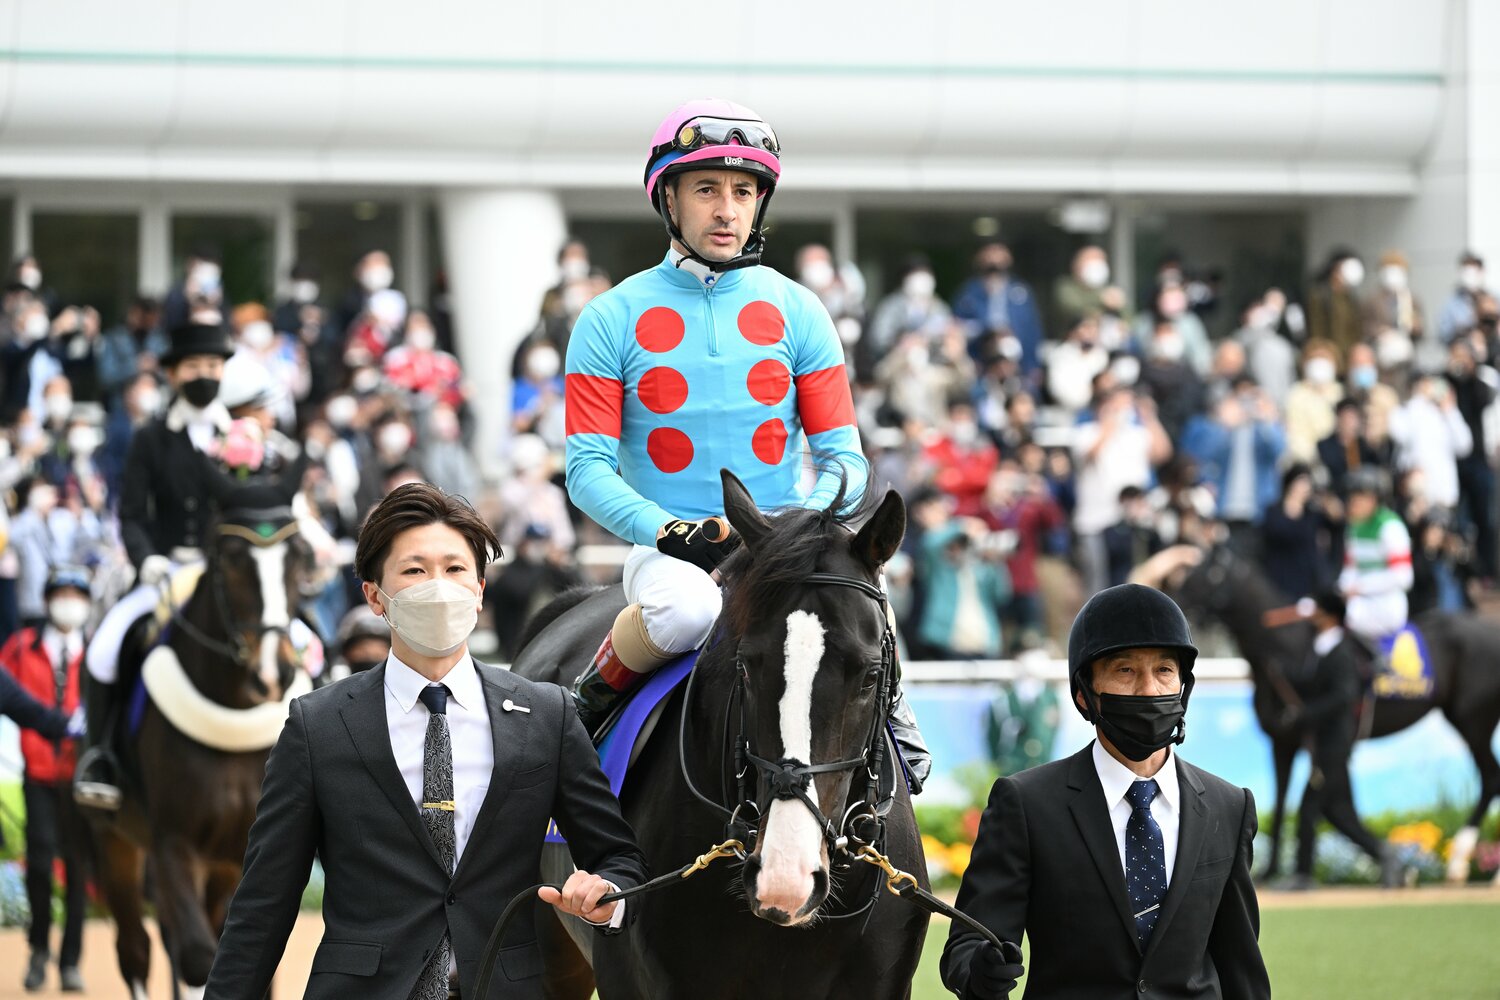 日本ダービー イクイノックスの 大外18番枠 から馬券に絡んだのは 過去10年でわずか1頭 状態抜群 優勝の可能性がある馬は 競馬 Number Web ナンバー